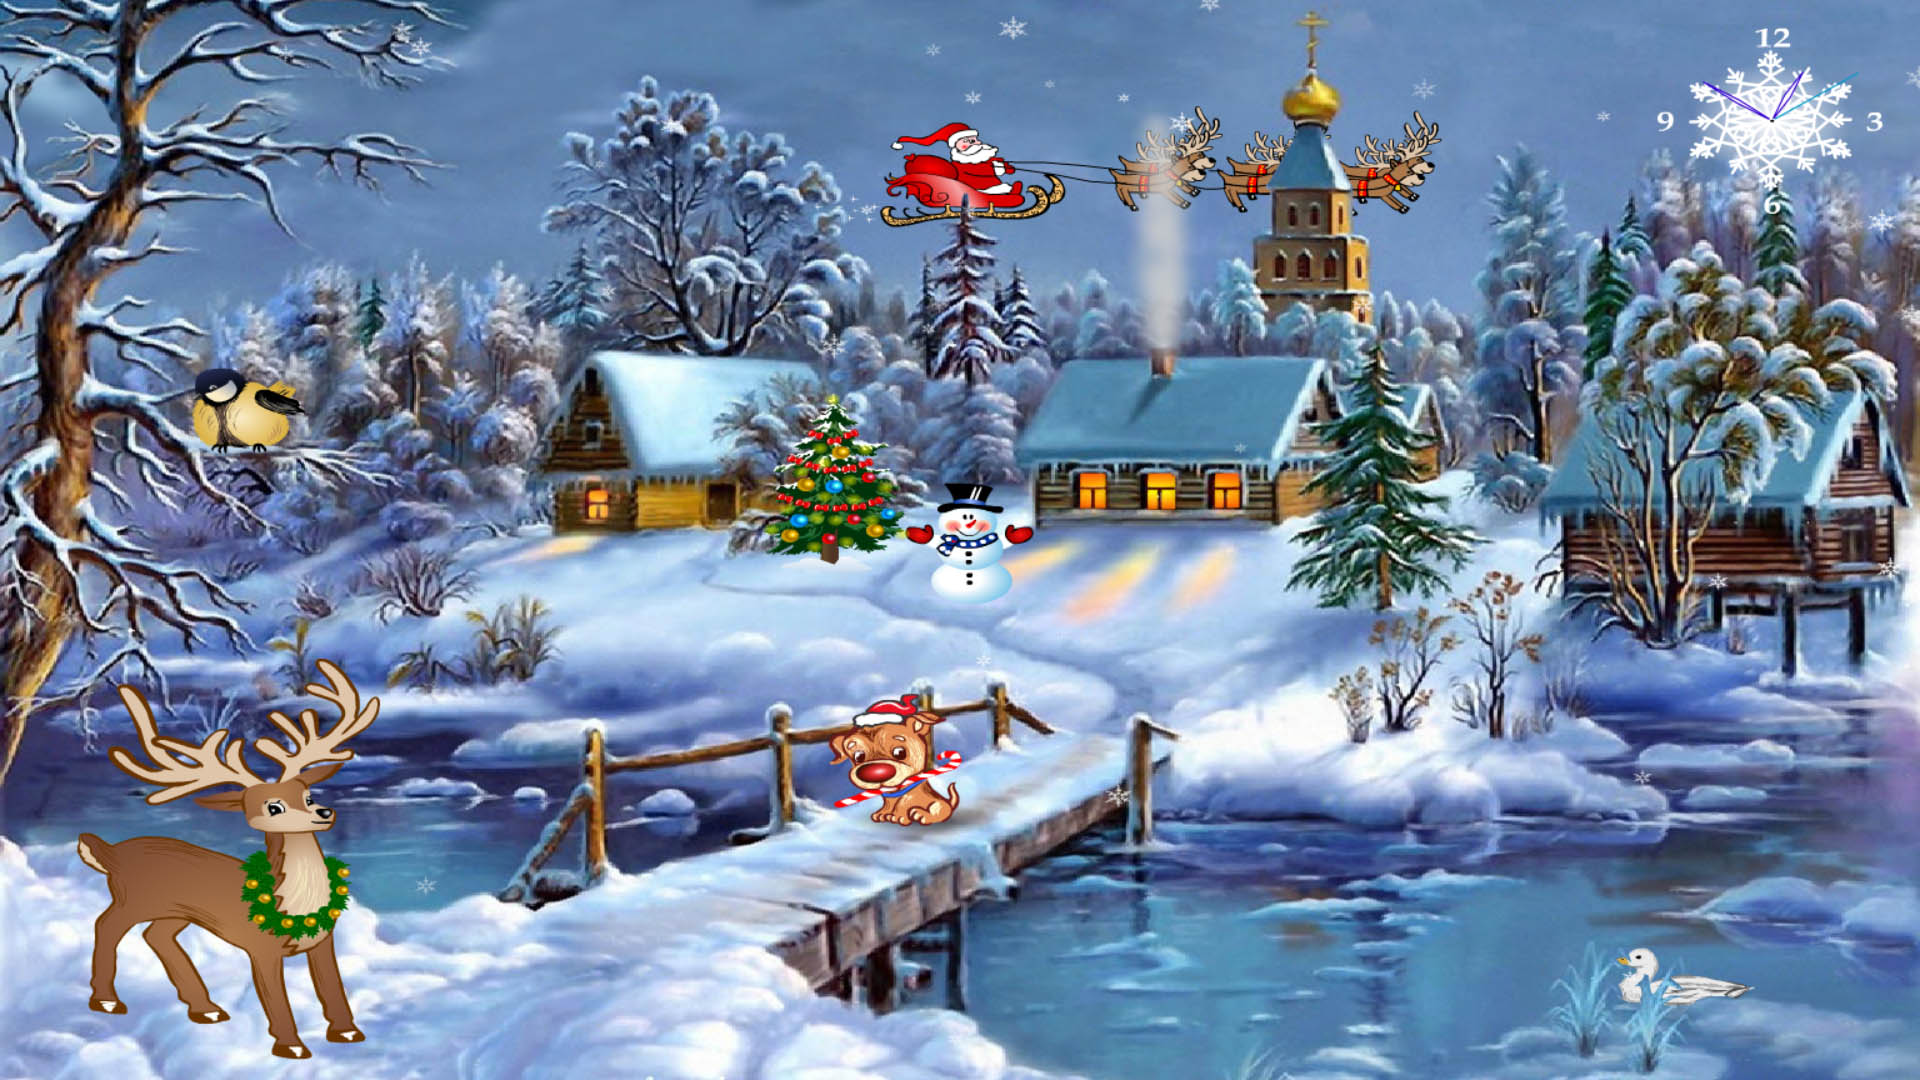 Free Christmas Screensaver for Windows 10 Christmas Symphony